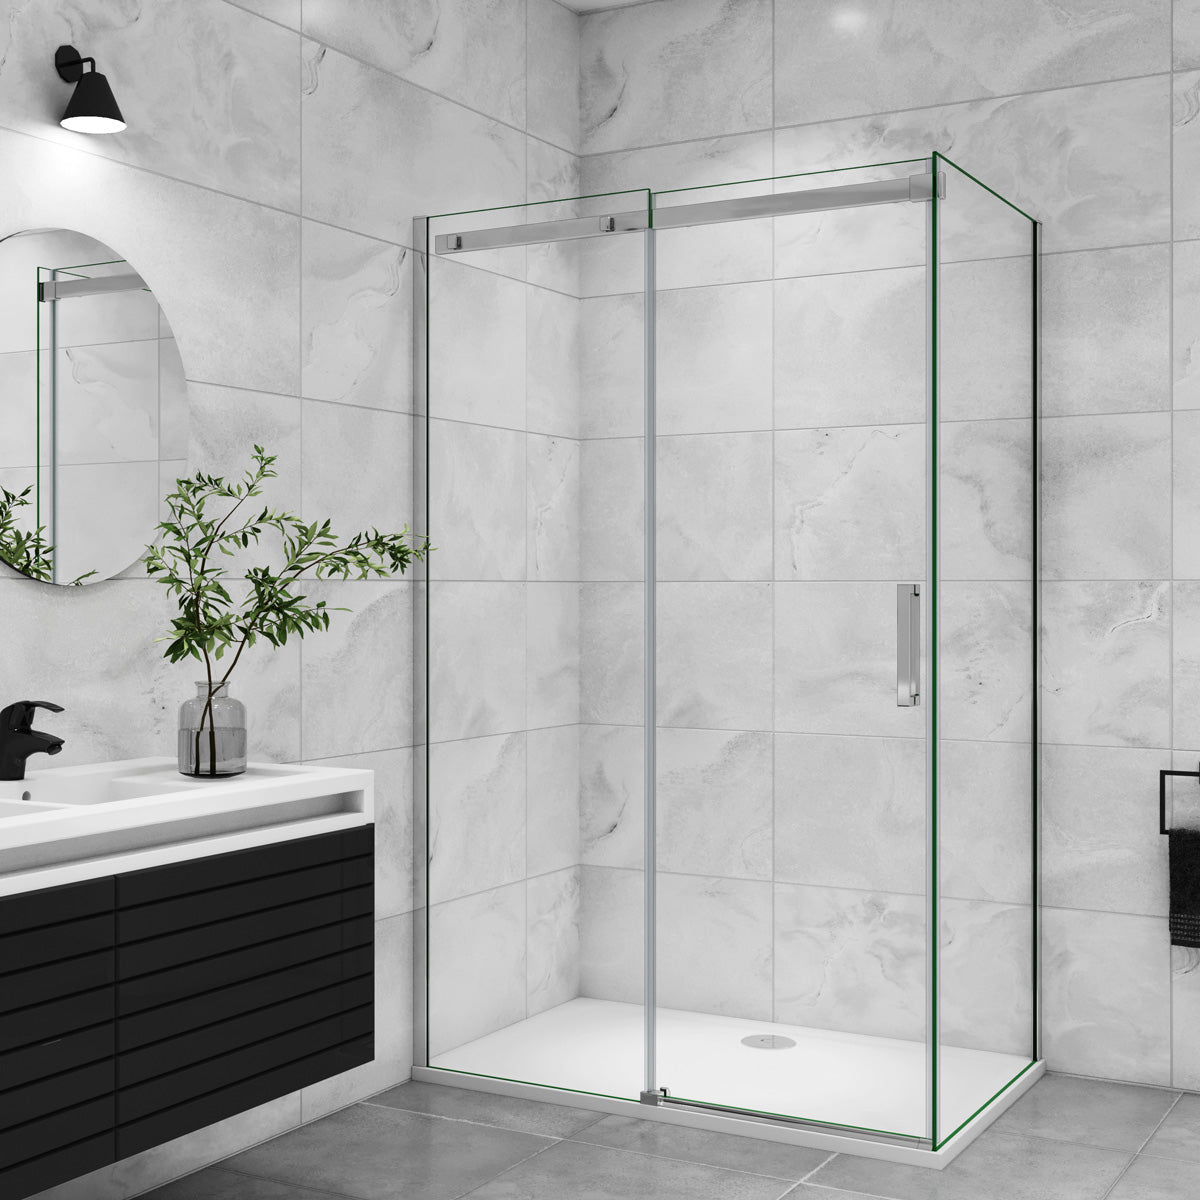 Duschtür+Seitenwand Schiebetür Duschkabine Dusche Duschabtrennung 120x70 cm Glasstärke 8mm